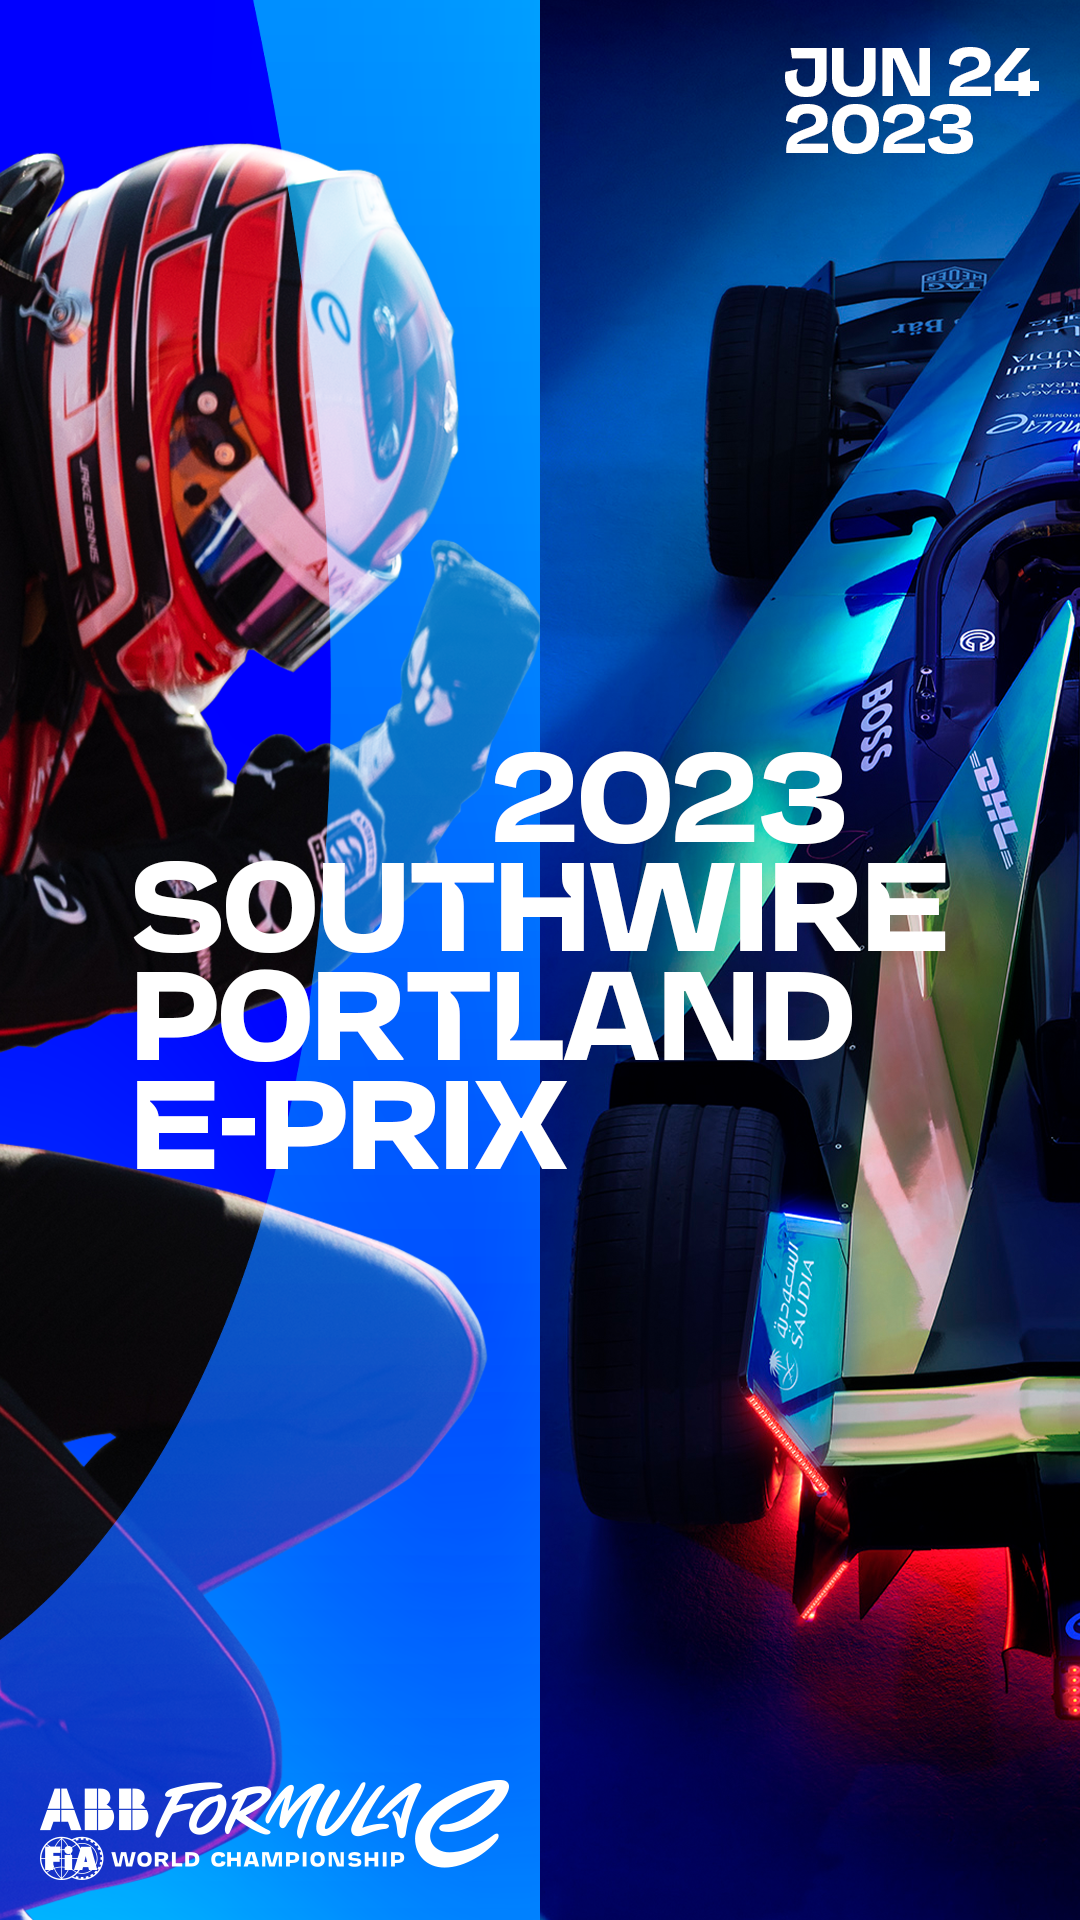 Southwire Portland E-Prix June 24, 2023